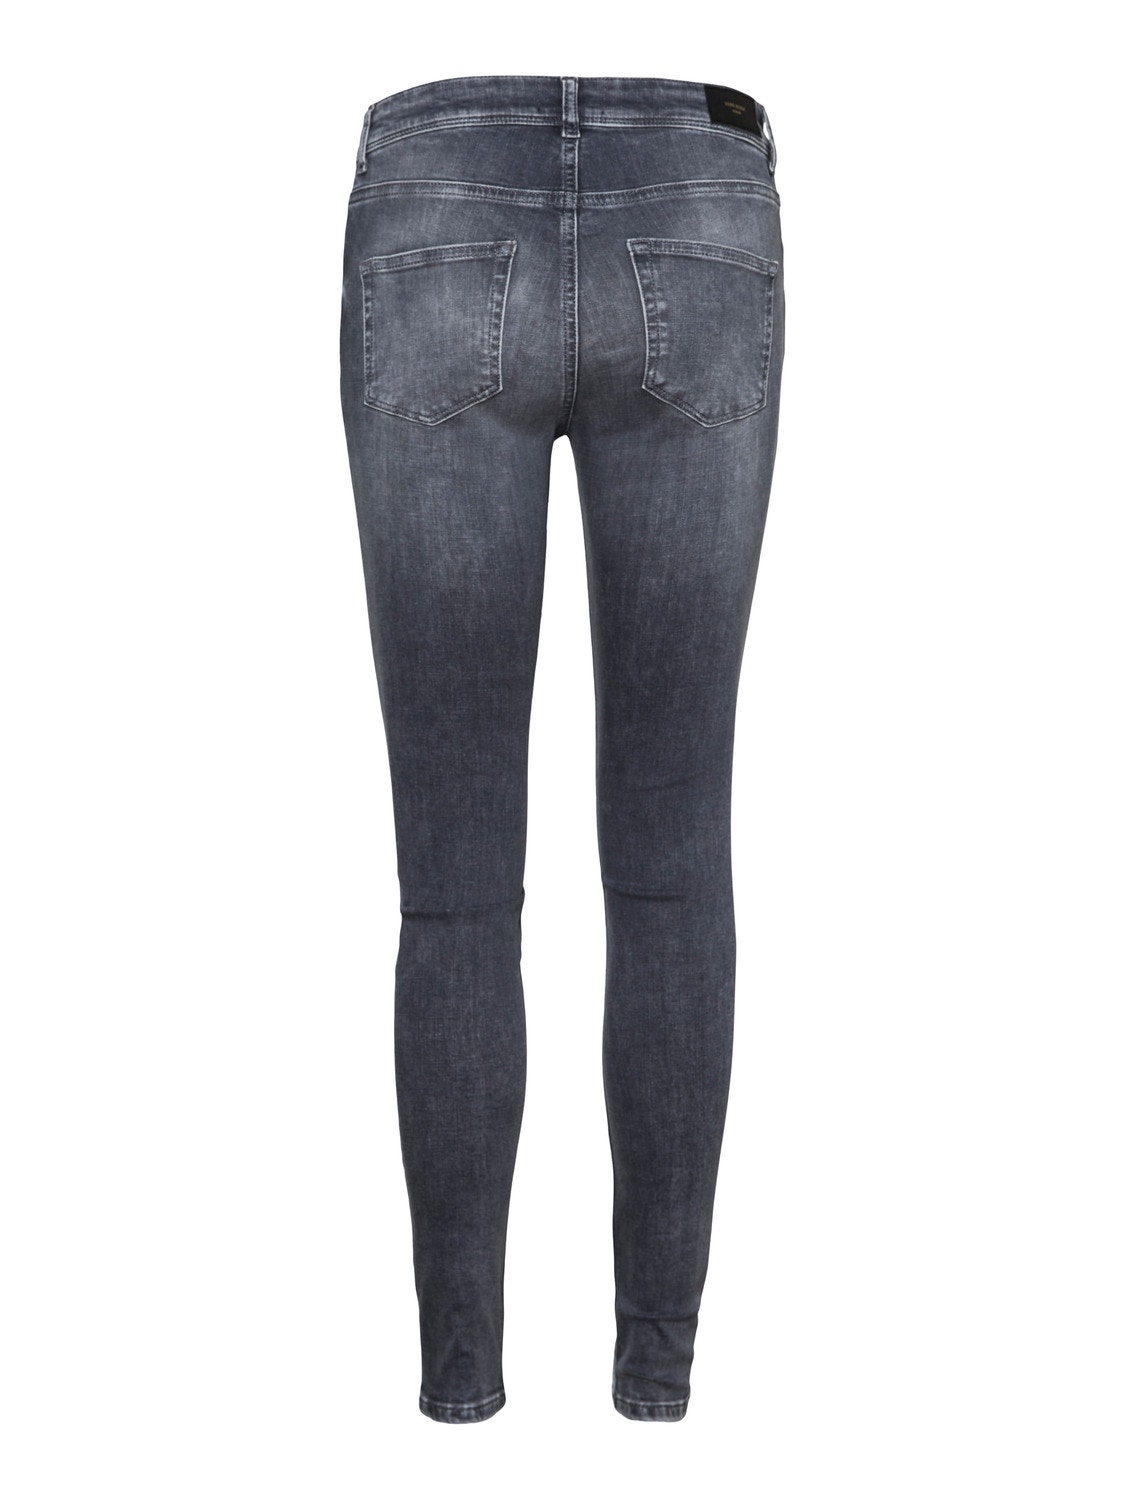 Vero Moda VMLUX Middels høyt snitt Slim Fit Jeans -Medium Grey Denim - 10241358